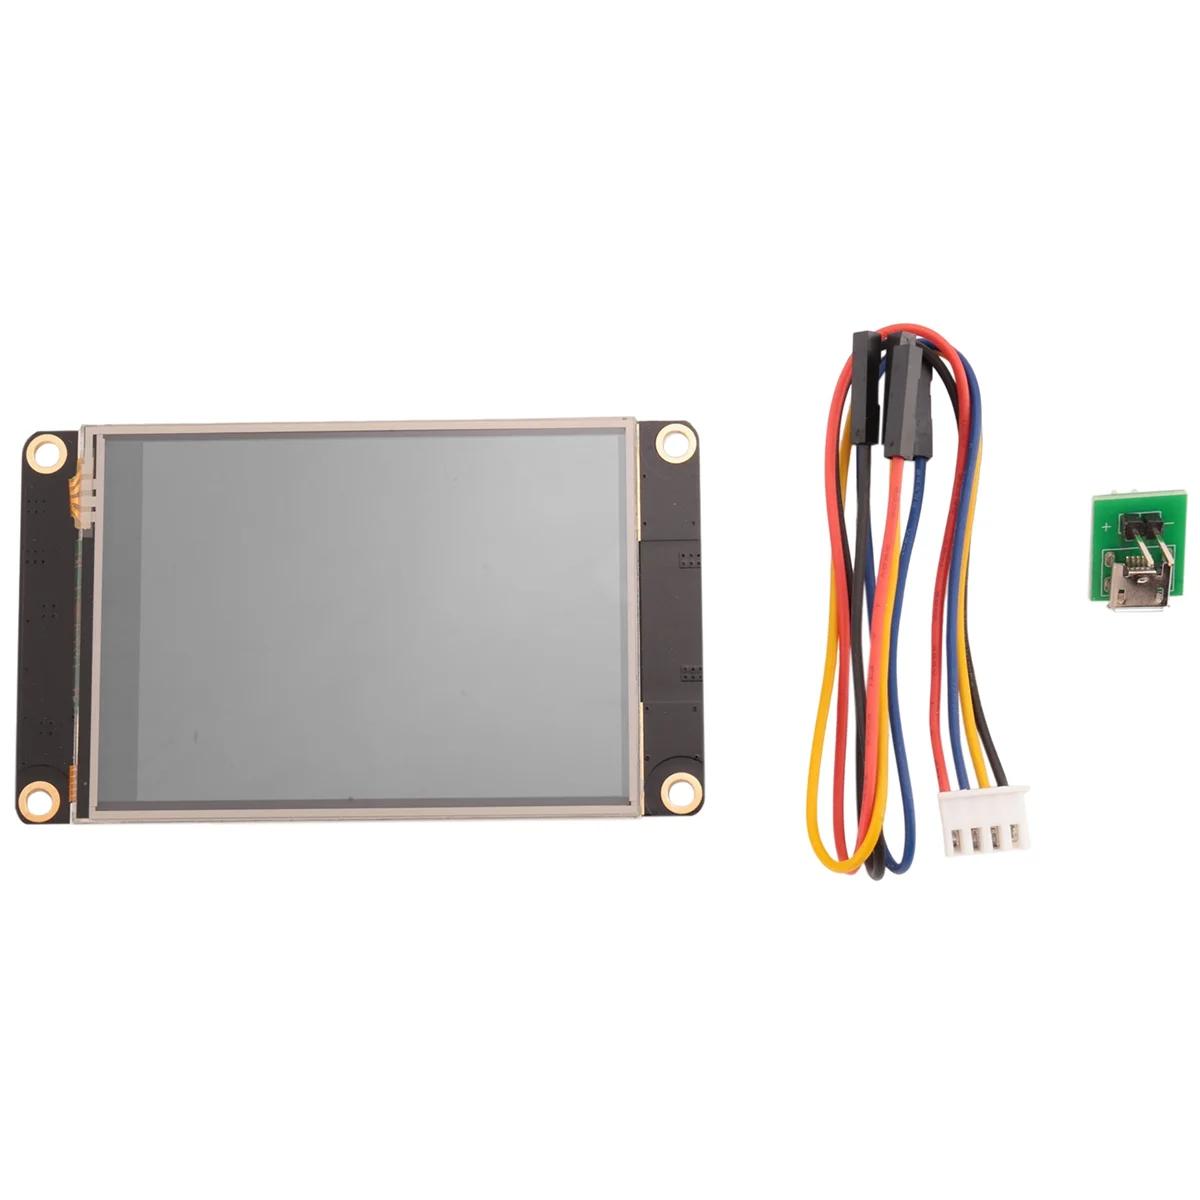 HMI LCD ġ ÷, 2.8 ġ ׼ ÷,  ø UASRT TFT LCD , NX3224K028